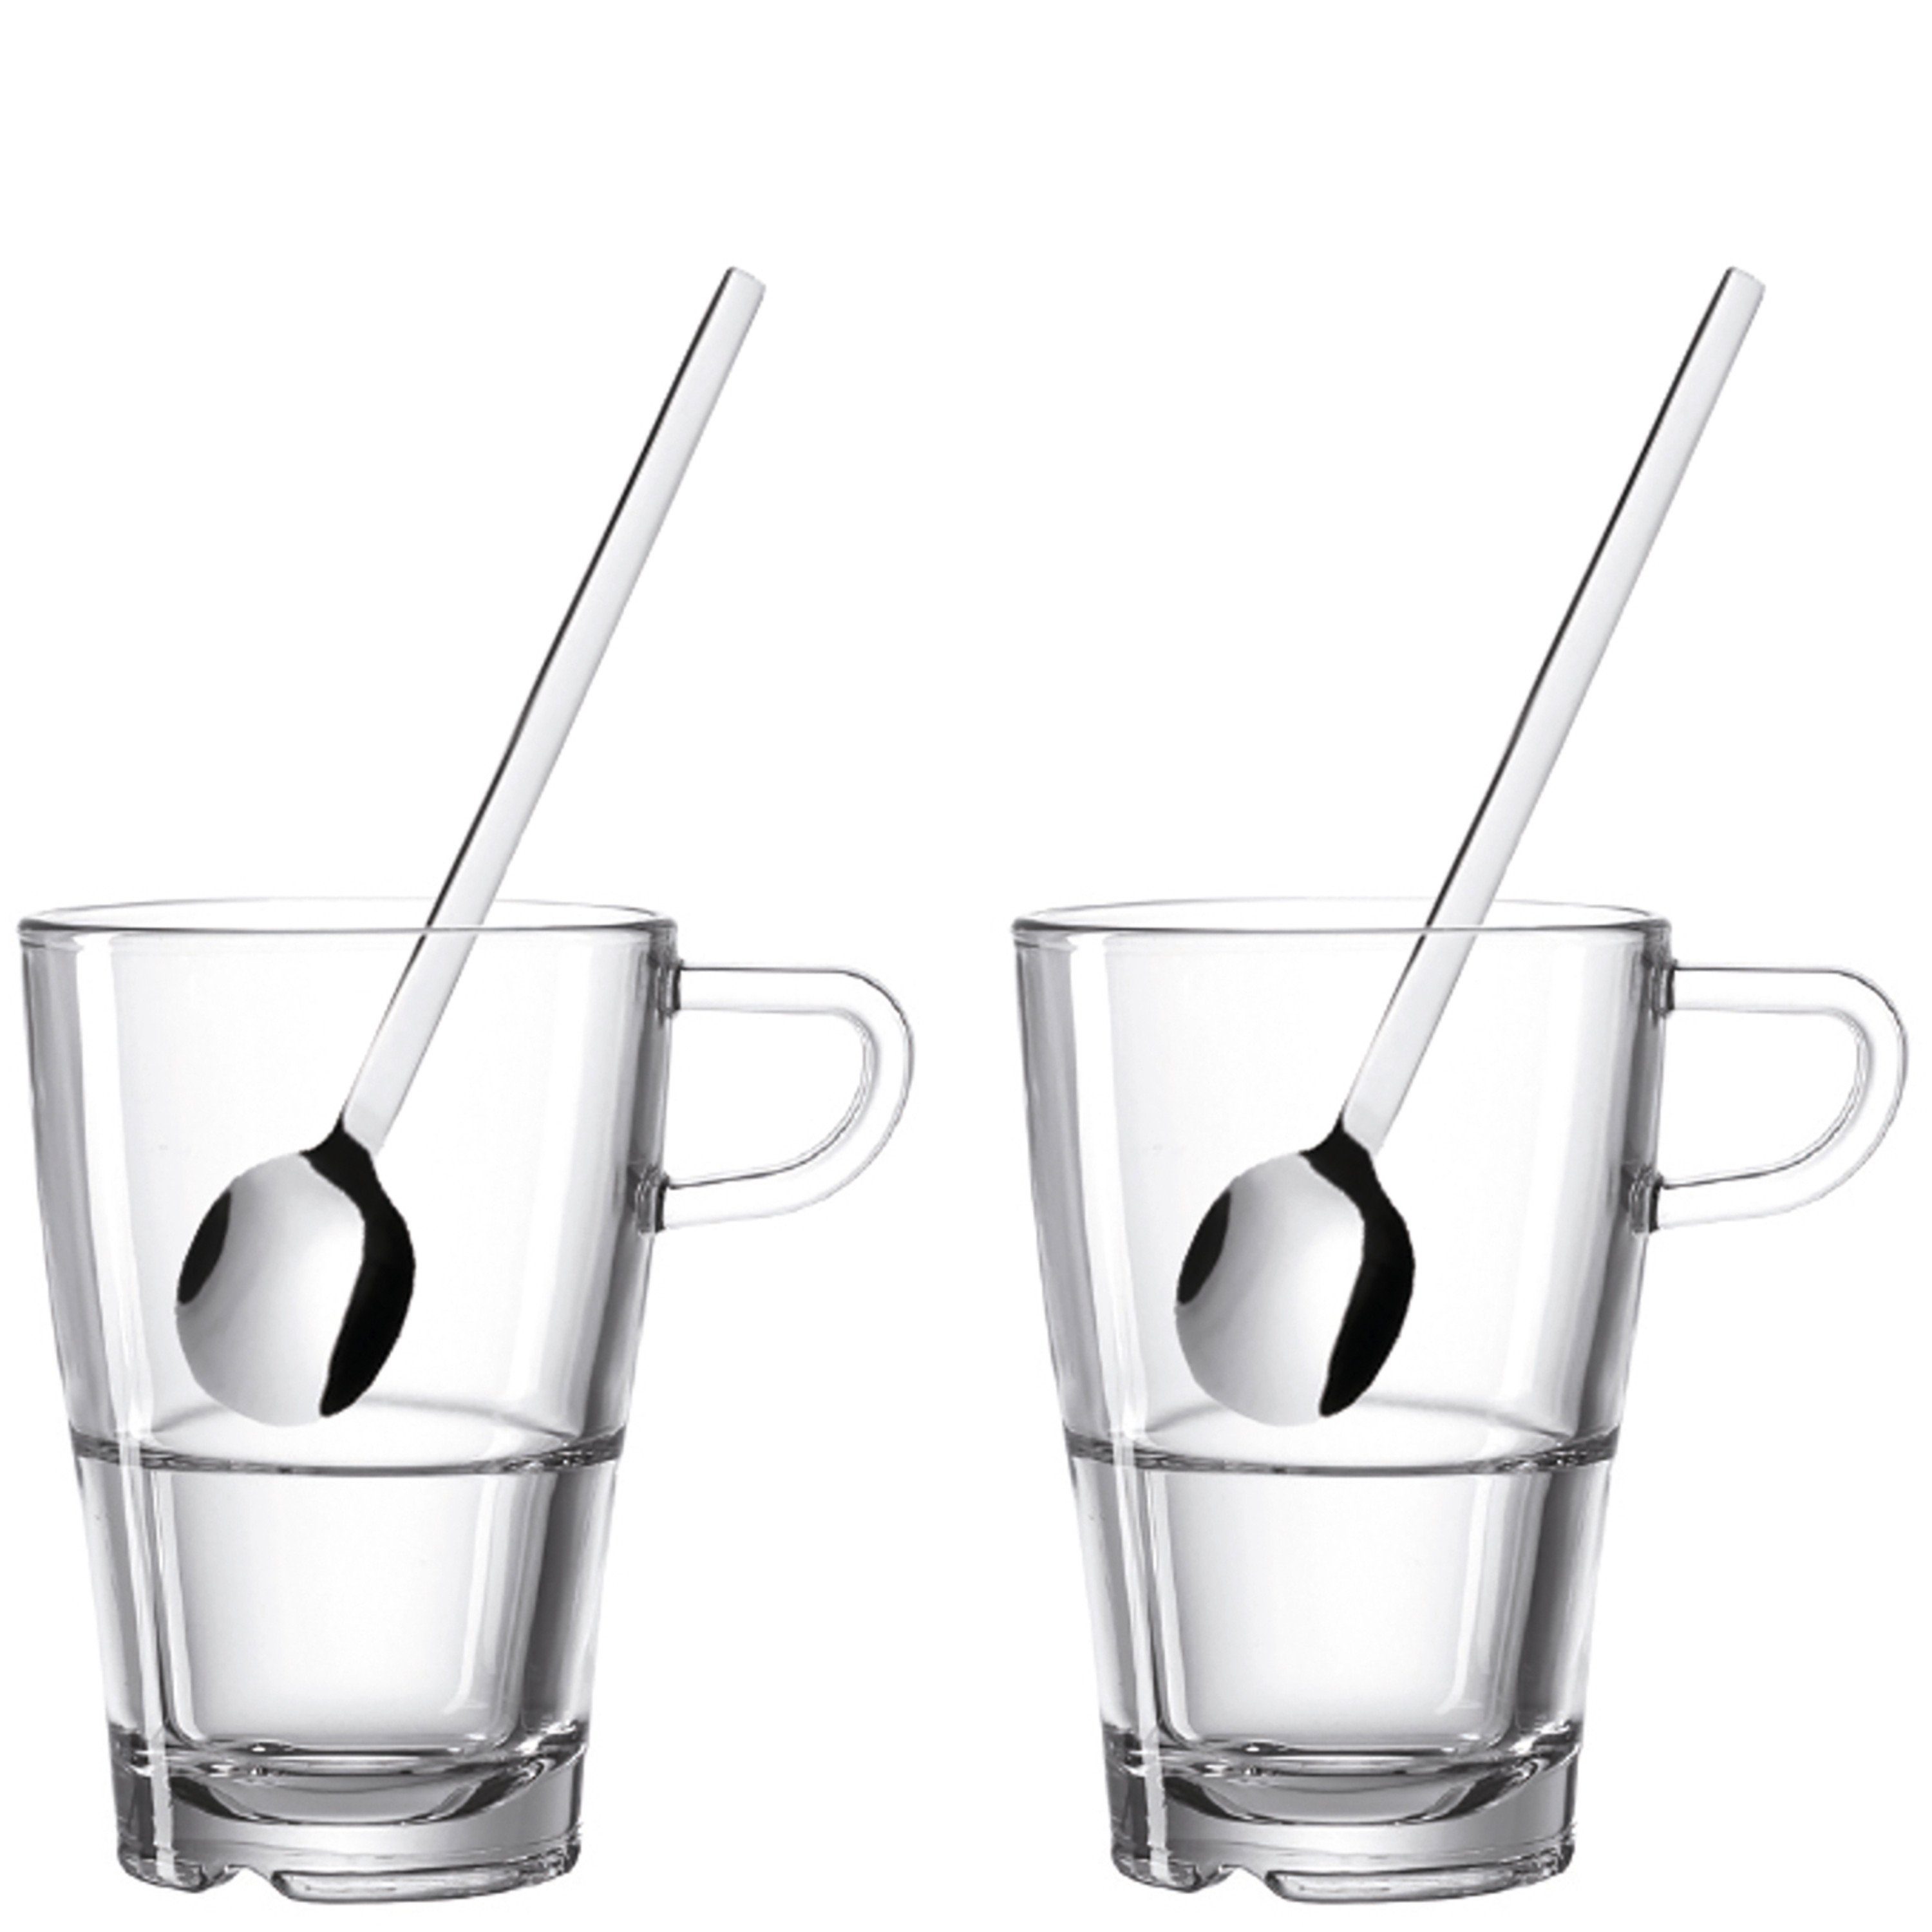 LEONARDO Glas LEONARDO Macchiato Set aus der Serie SENSO, 4-teilig bestehend aus 2 Gläsern und 2 langen Löffeln, klarglas, Glas | Latte-Macchiato-Tassen